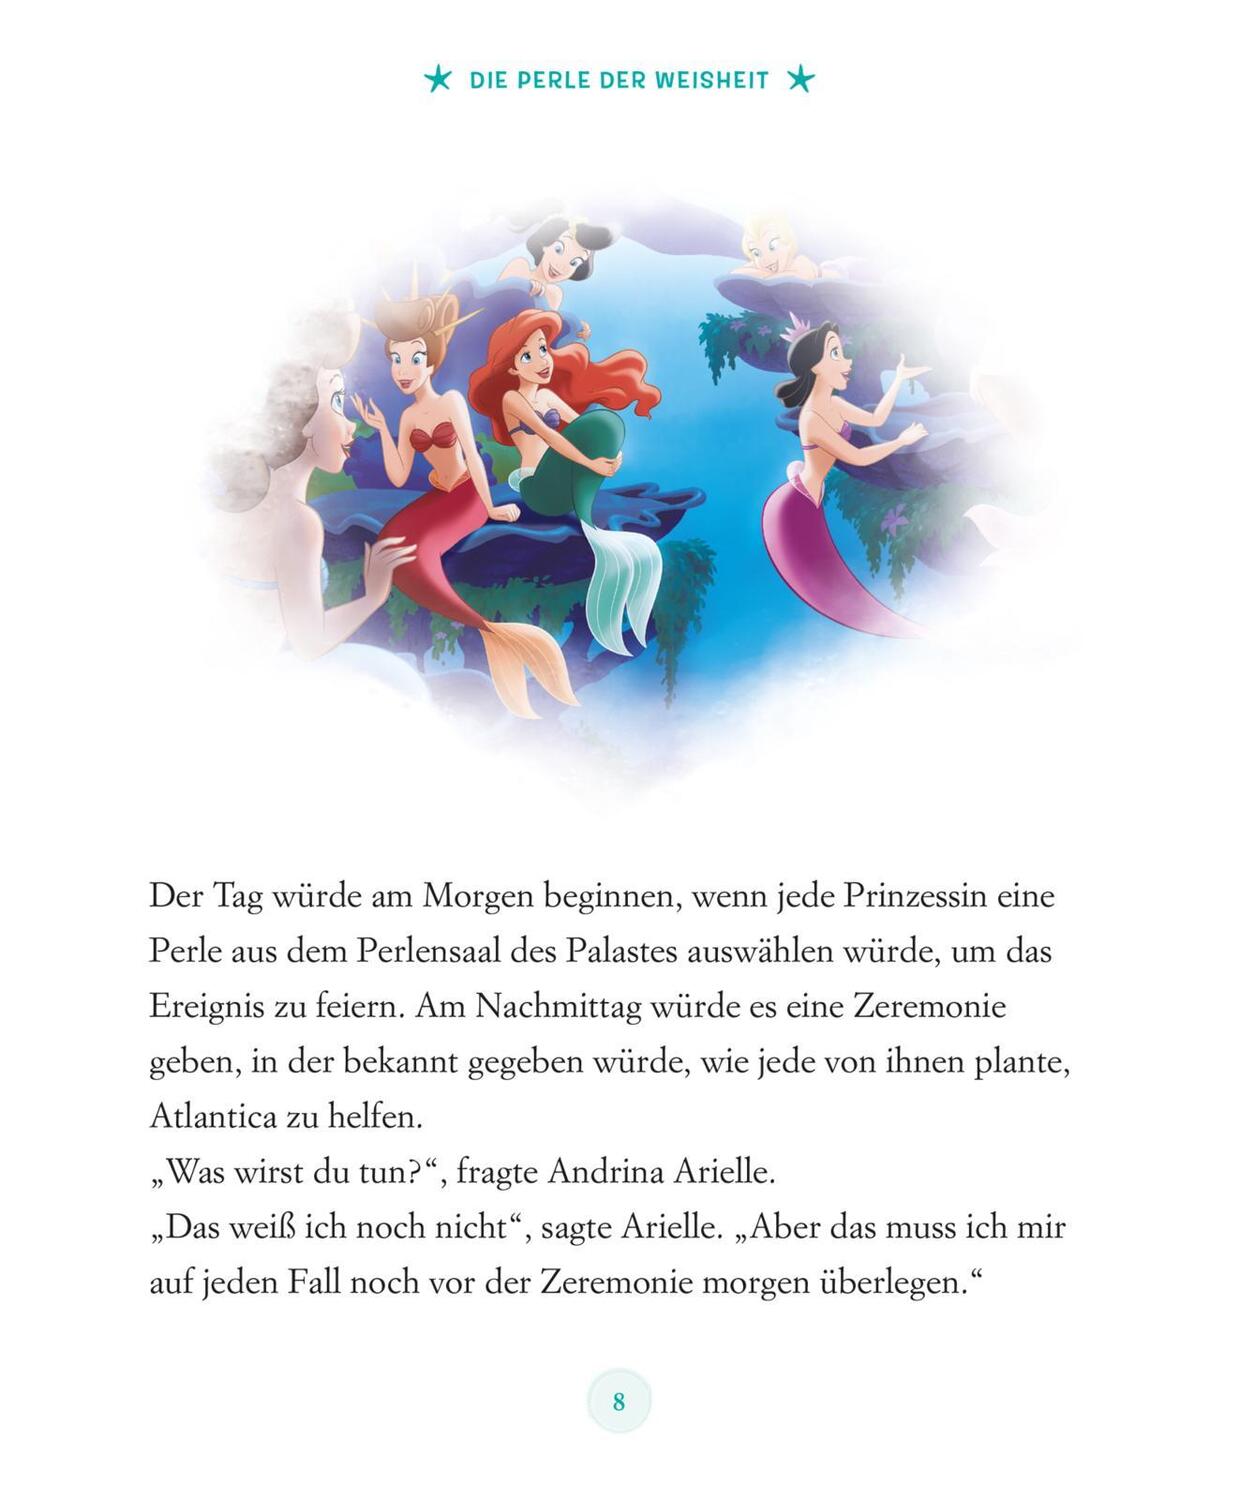 Bild: 9783845122236 | Disney: Die schönsten 5-Minuten-Geschichten: Im Meer | Buch | Deutsch